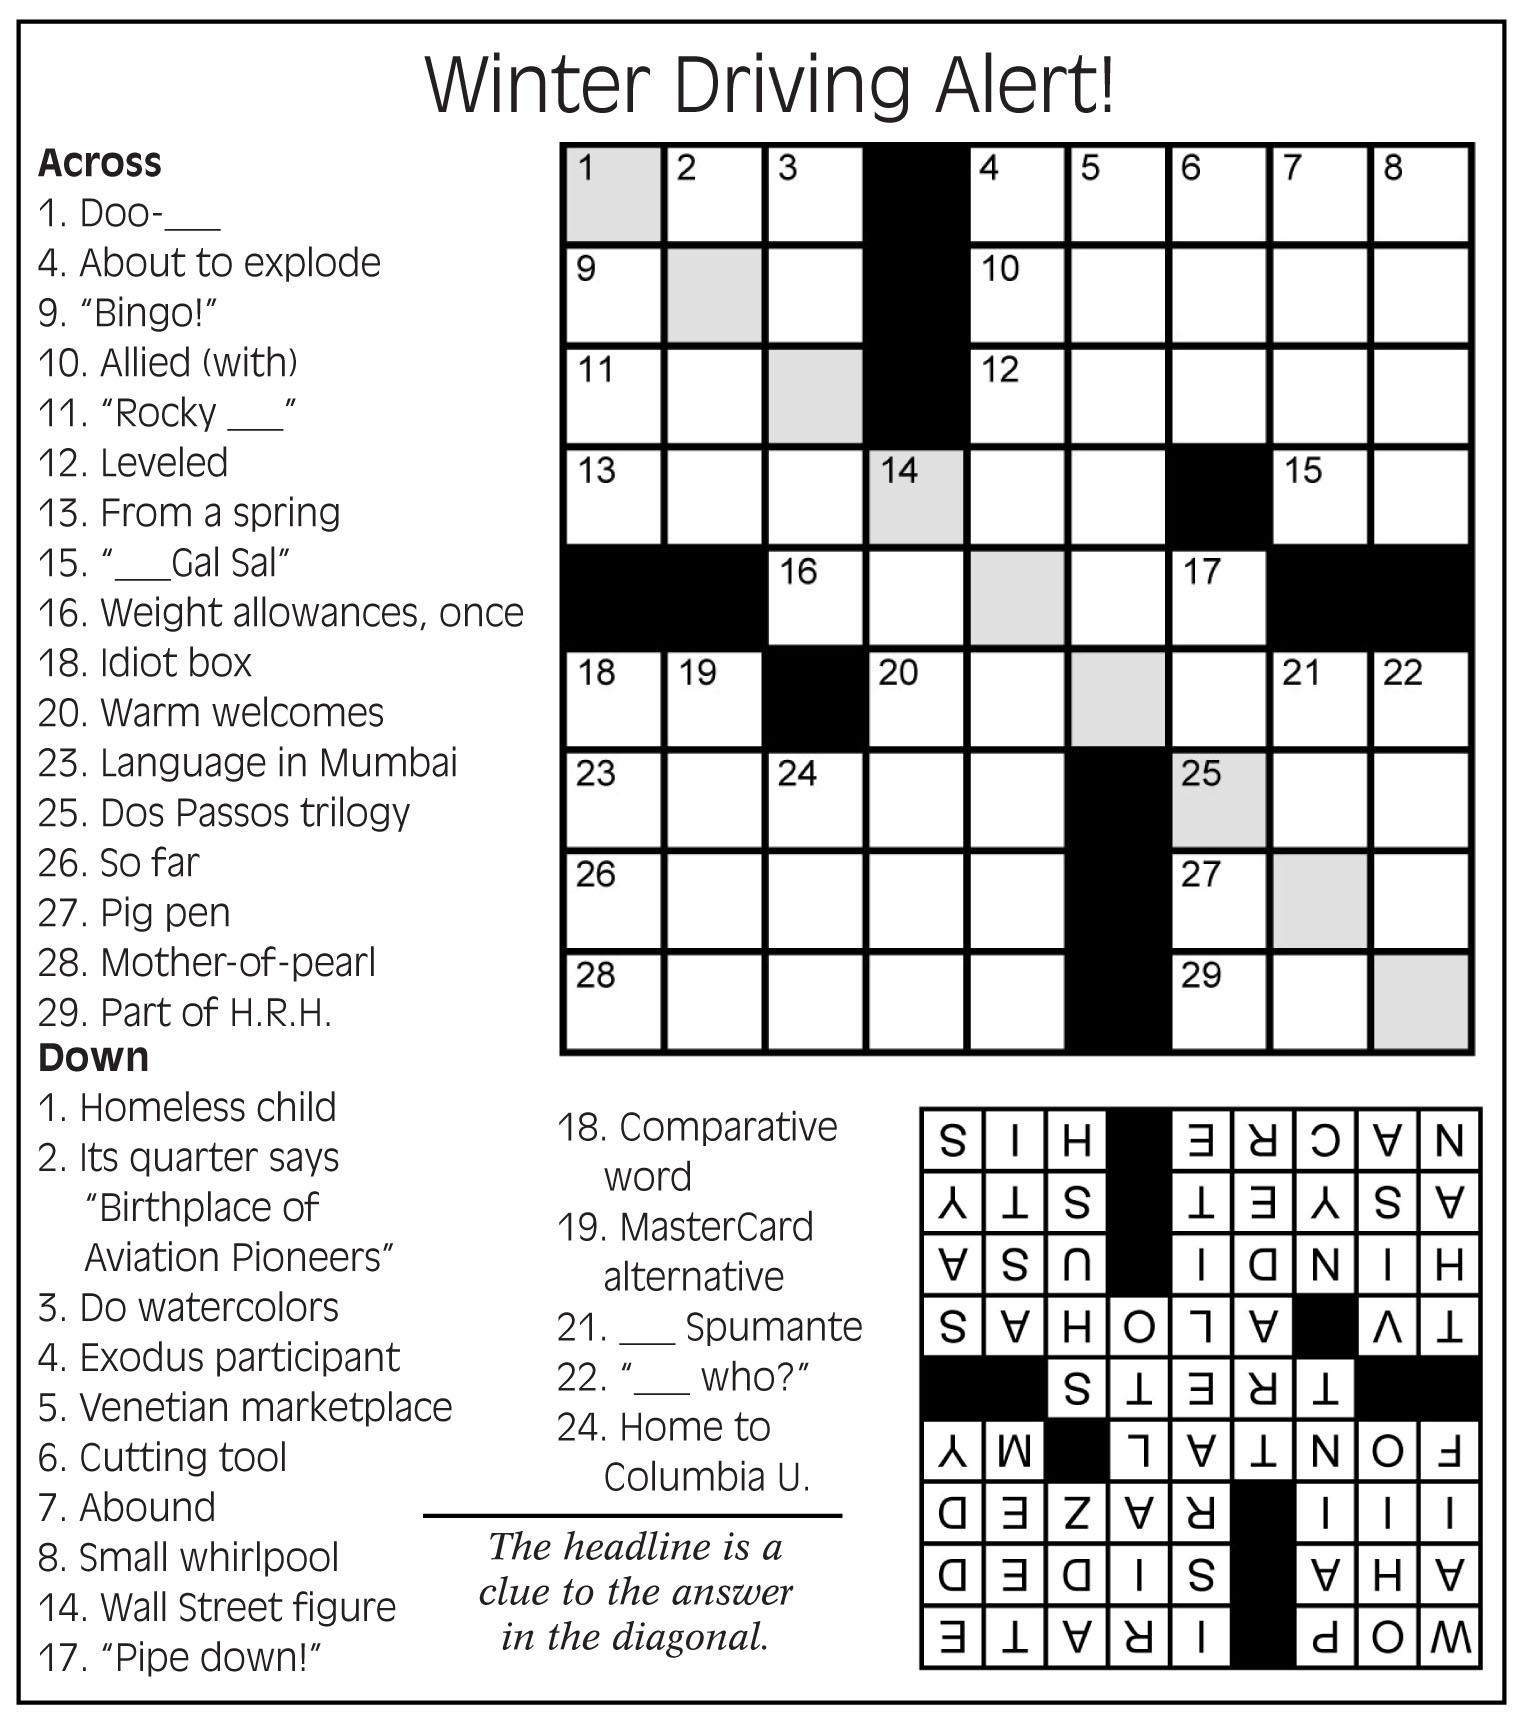 February Crossword Puzzle Printable